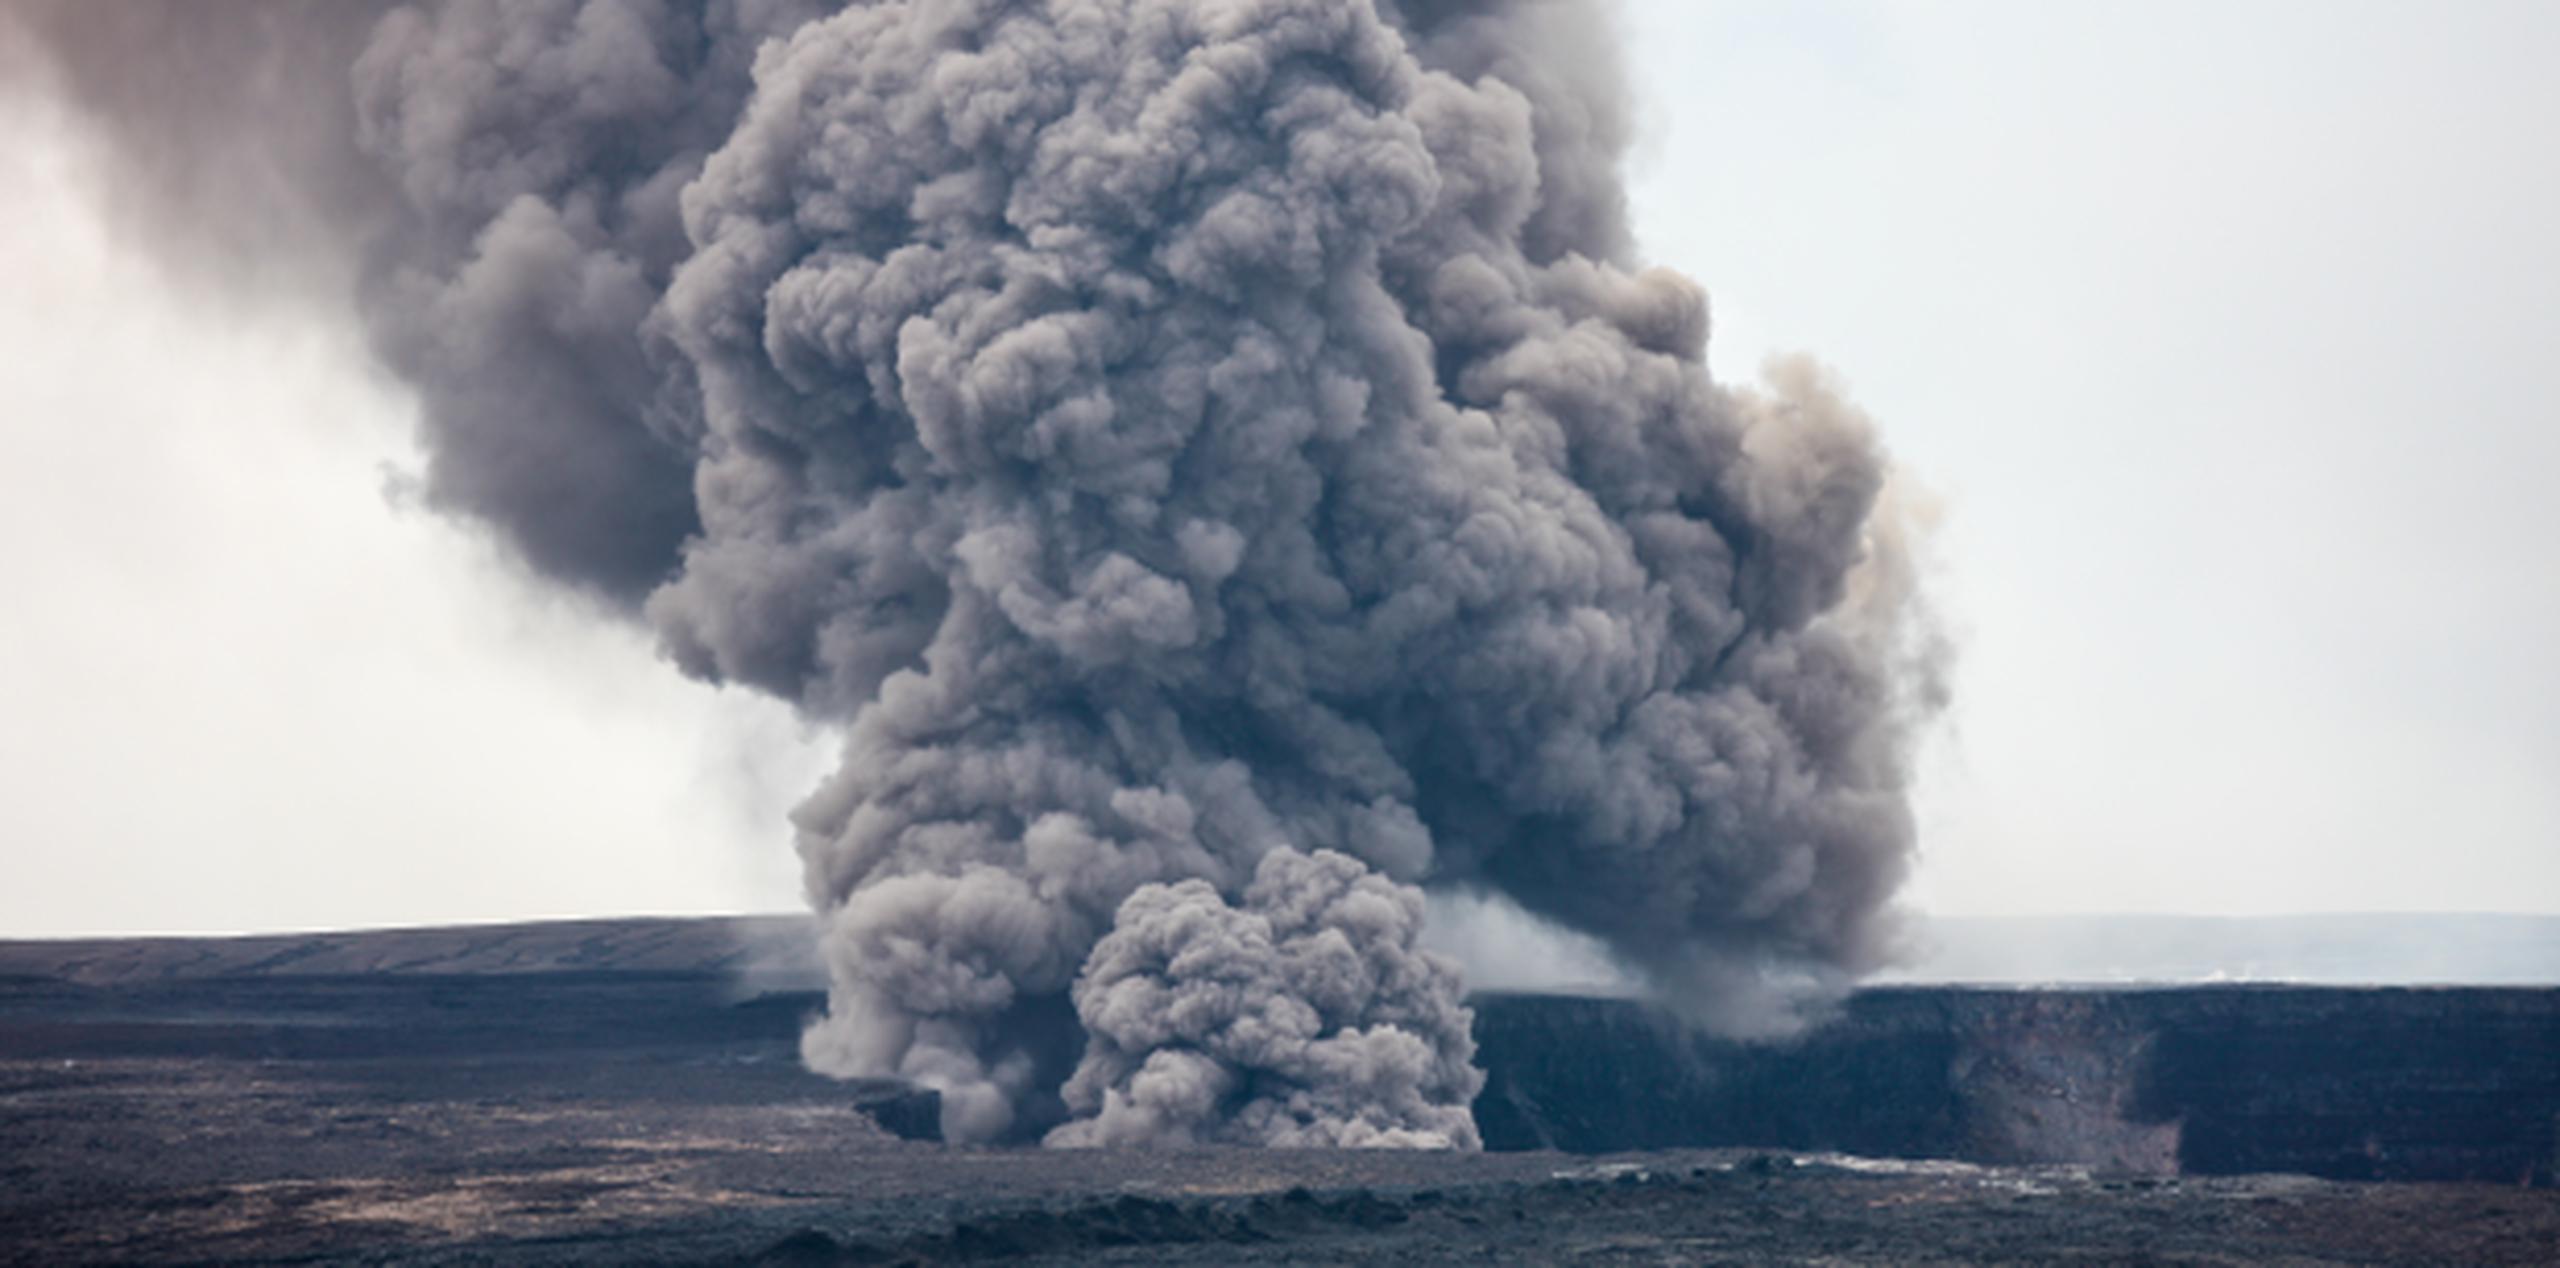 Expulsó lava fría, lodo y cenizas a hasta 164 pies metros de altura. (Shutterstock)